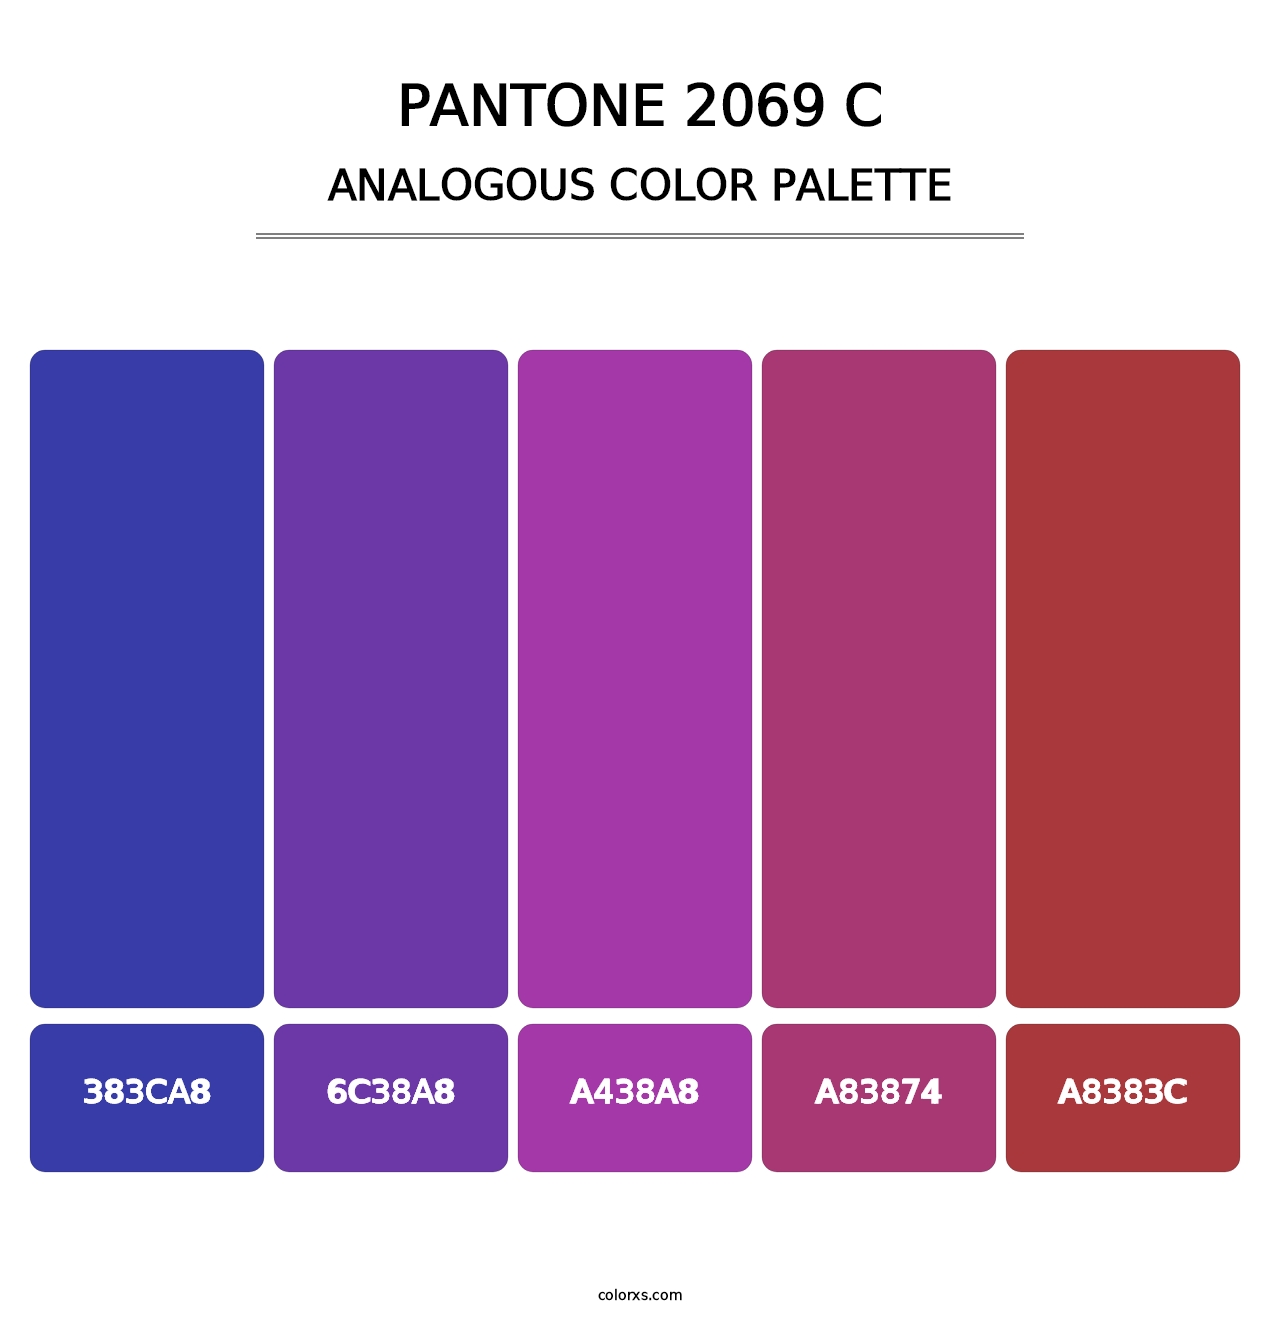 PANTONE 2069 C - Analogous Color Palette